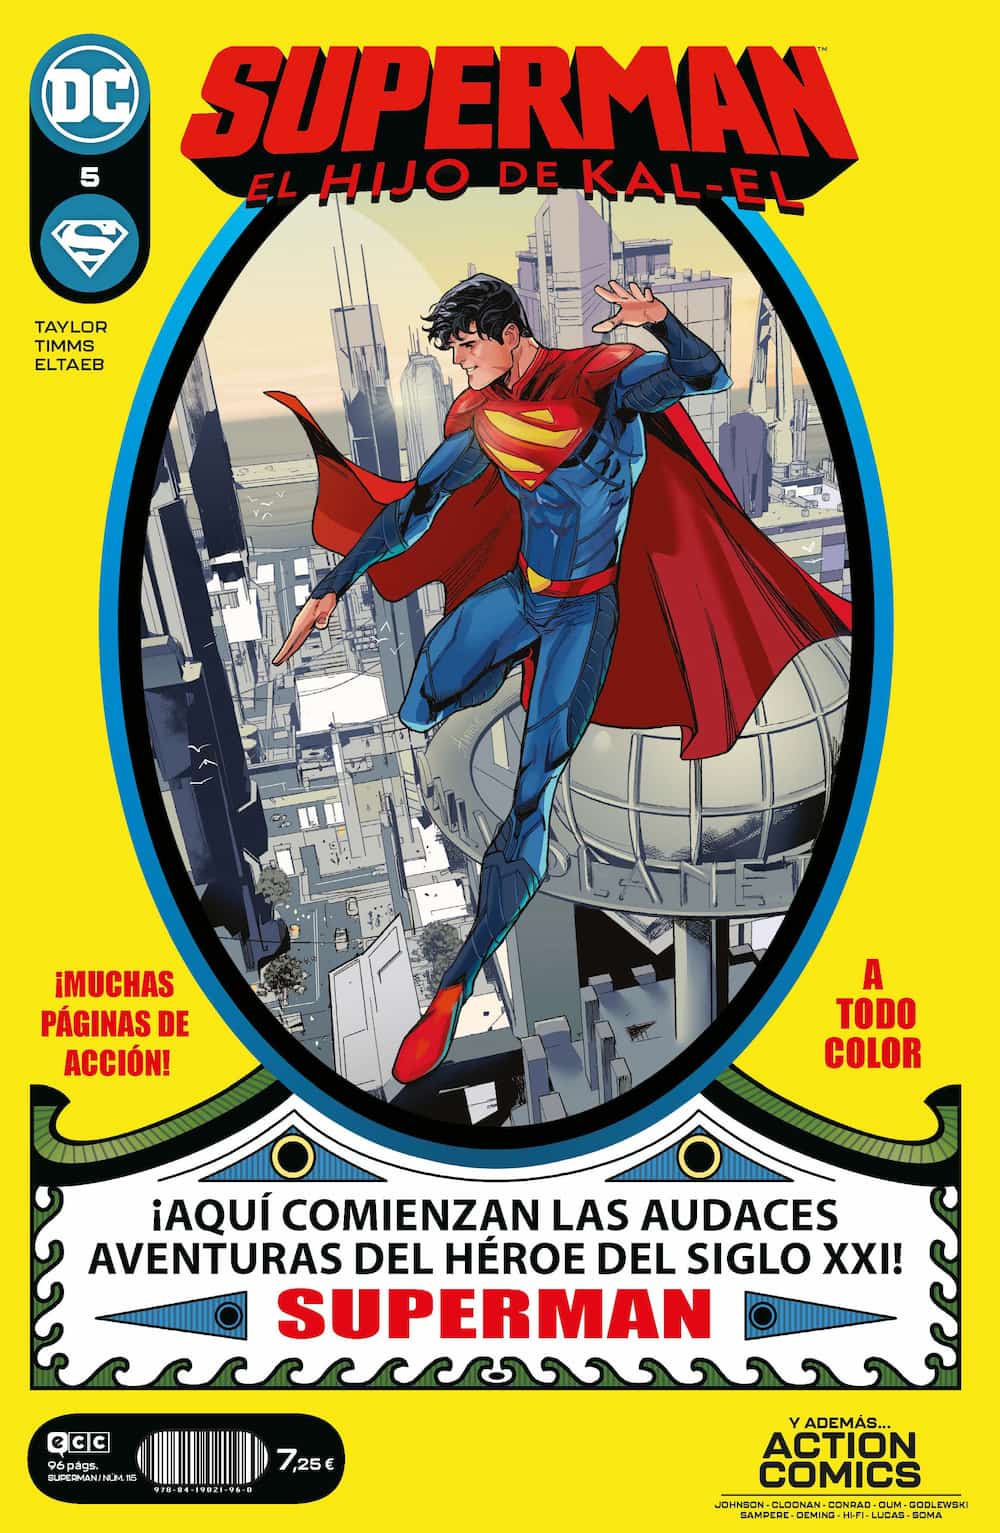 Superman: El Hijo de Kal-El